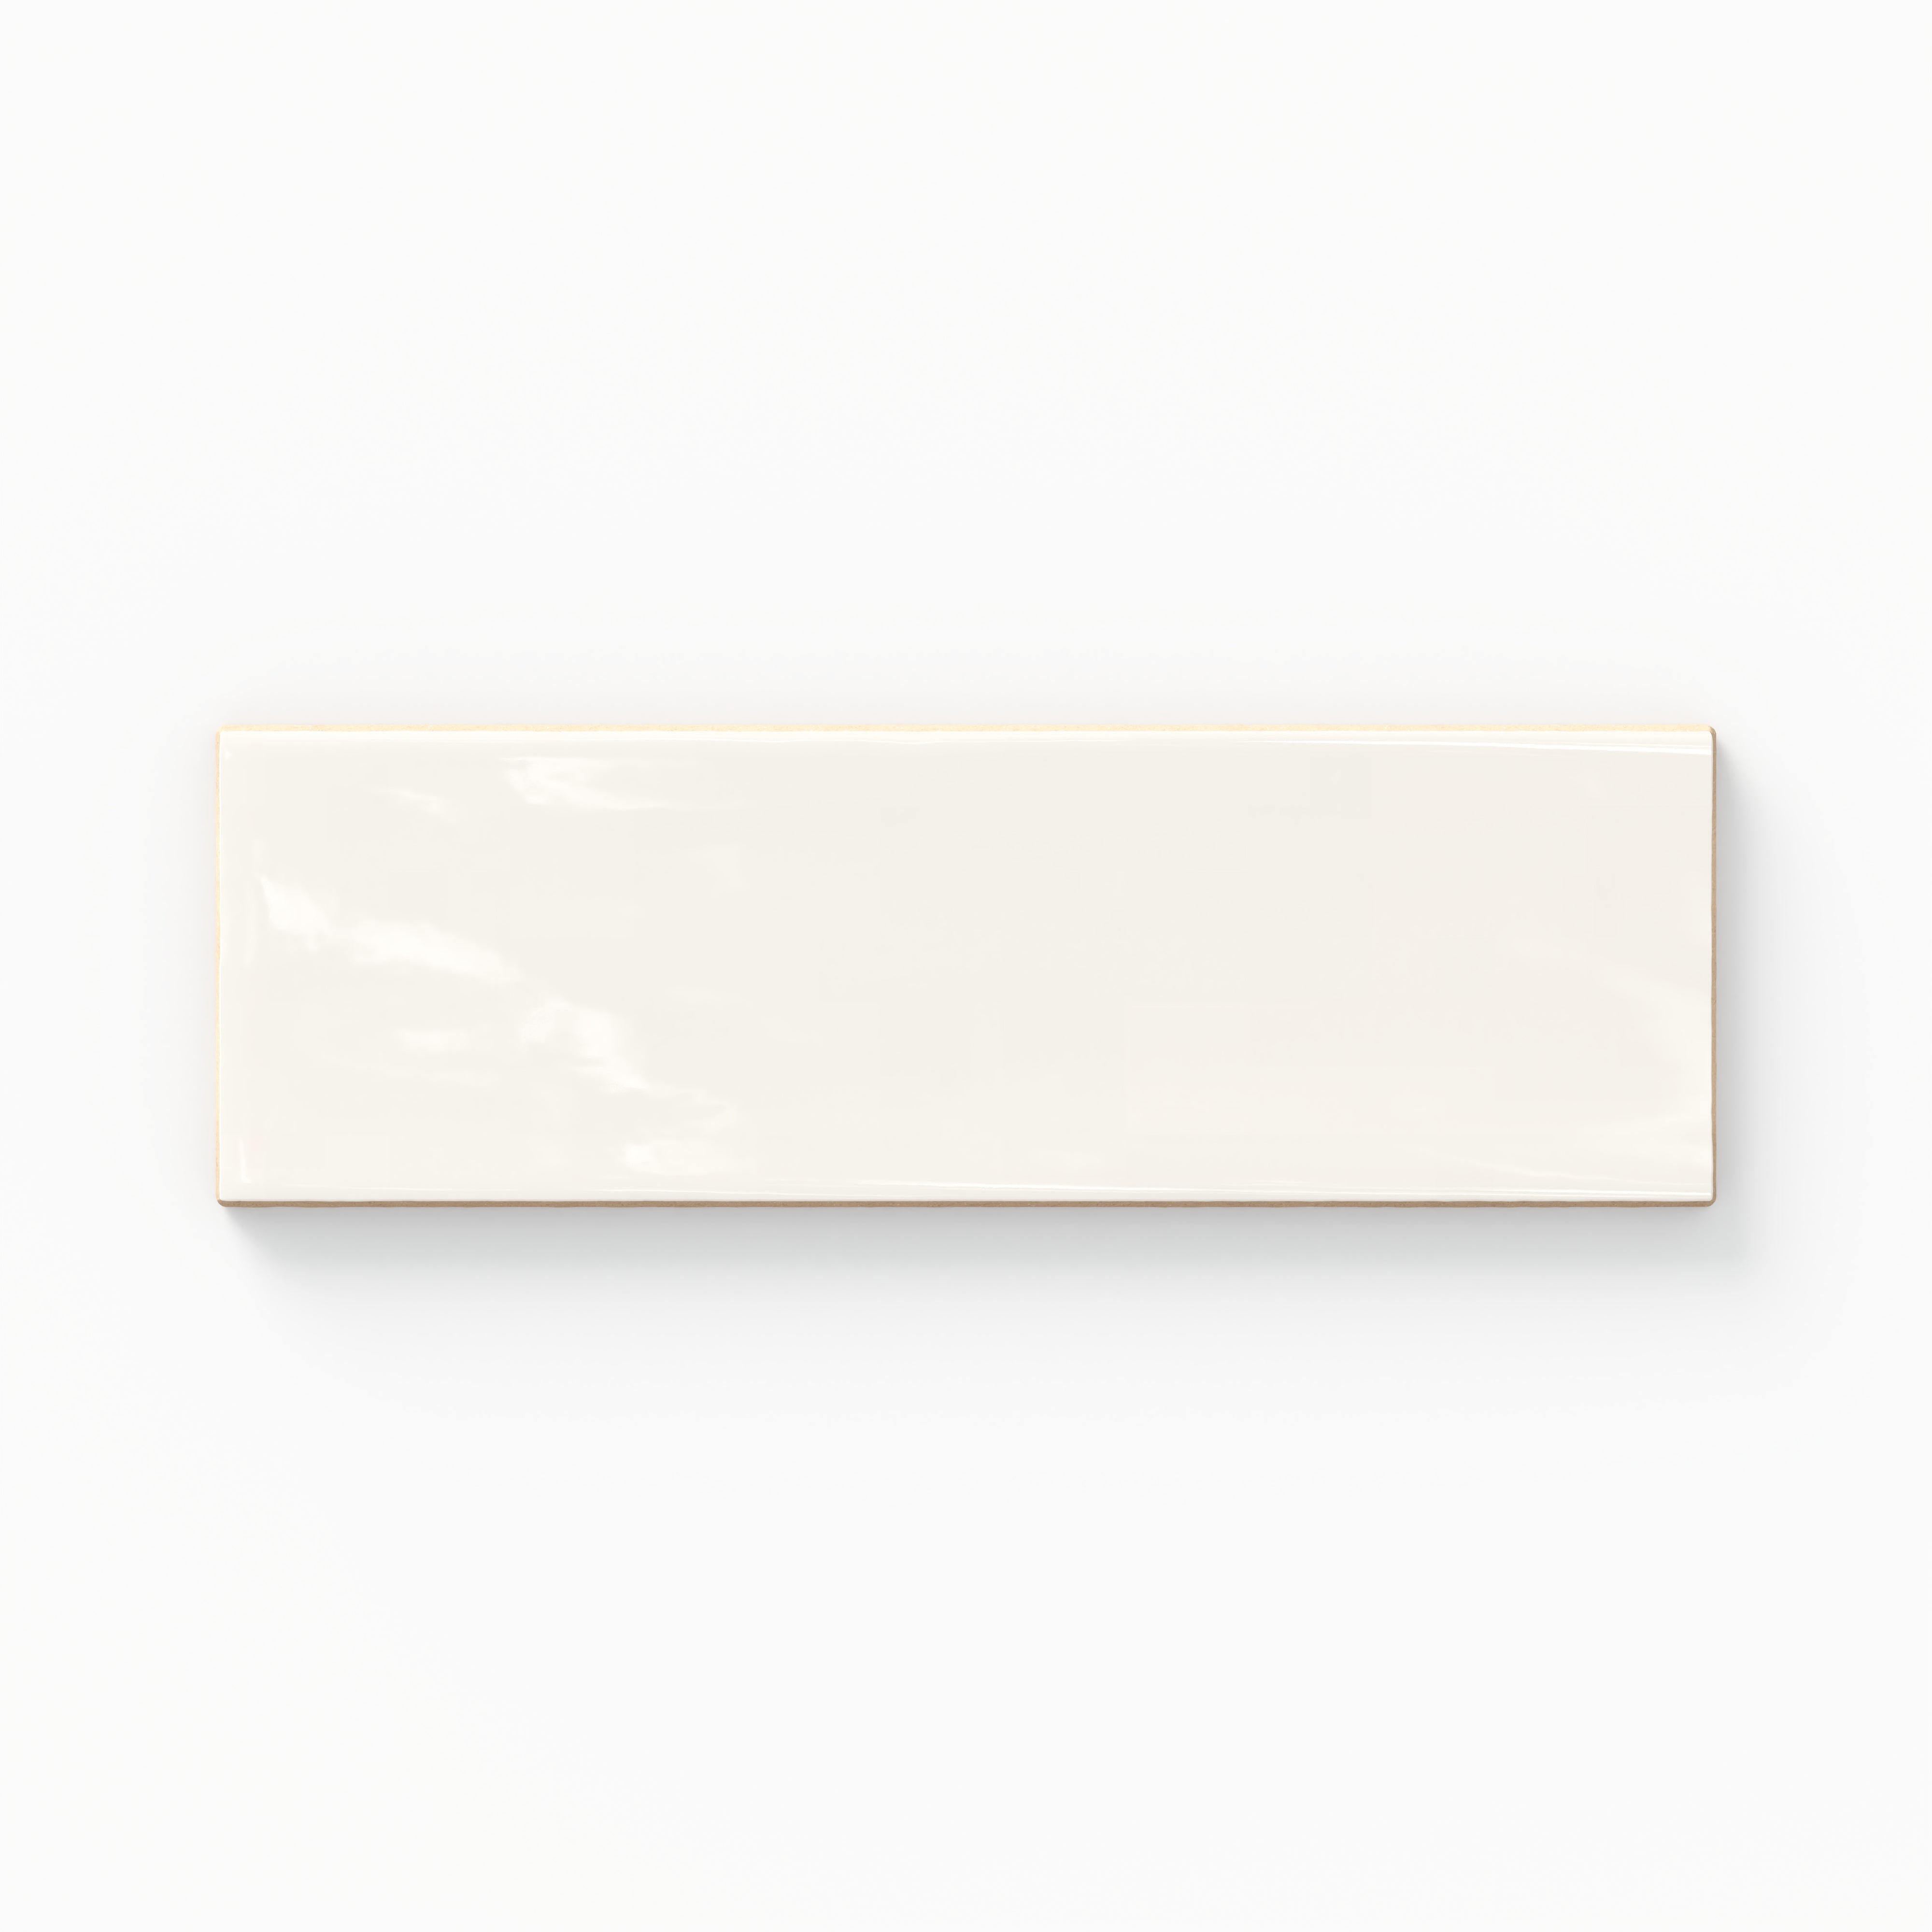 Jaden 2.5x8 Glossy Ceramic Tile in Eggshell Sample